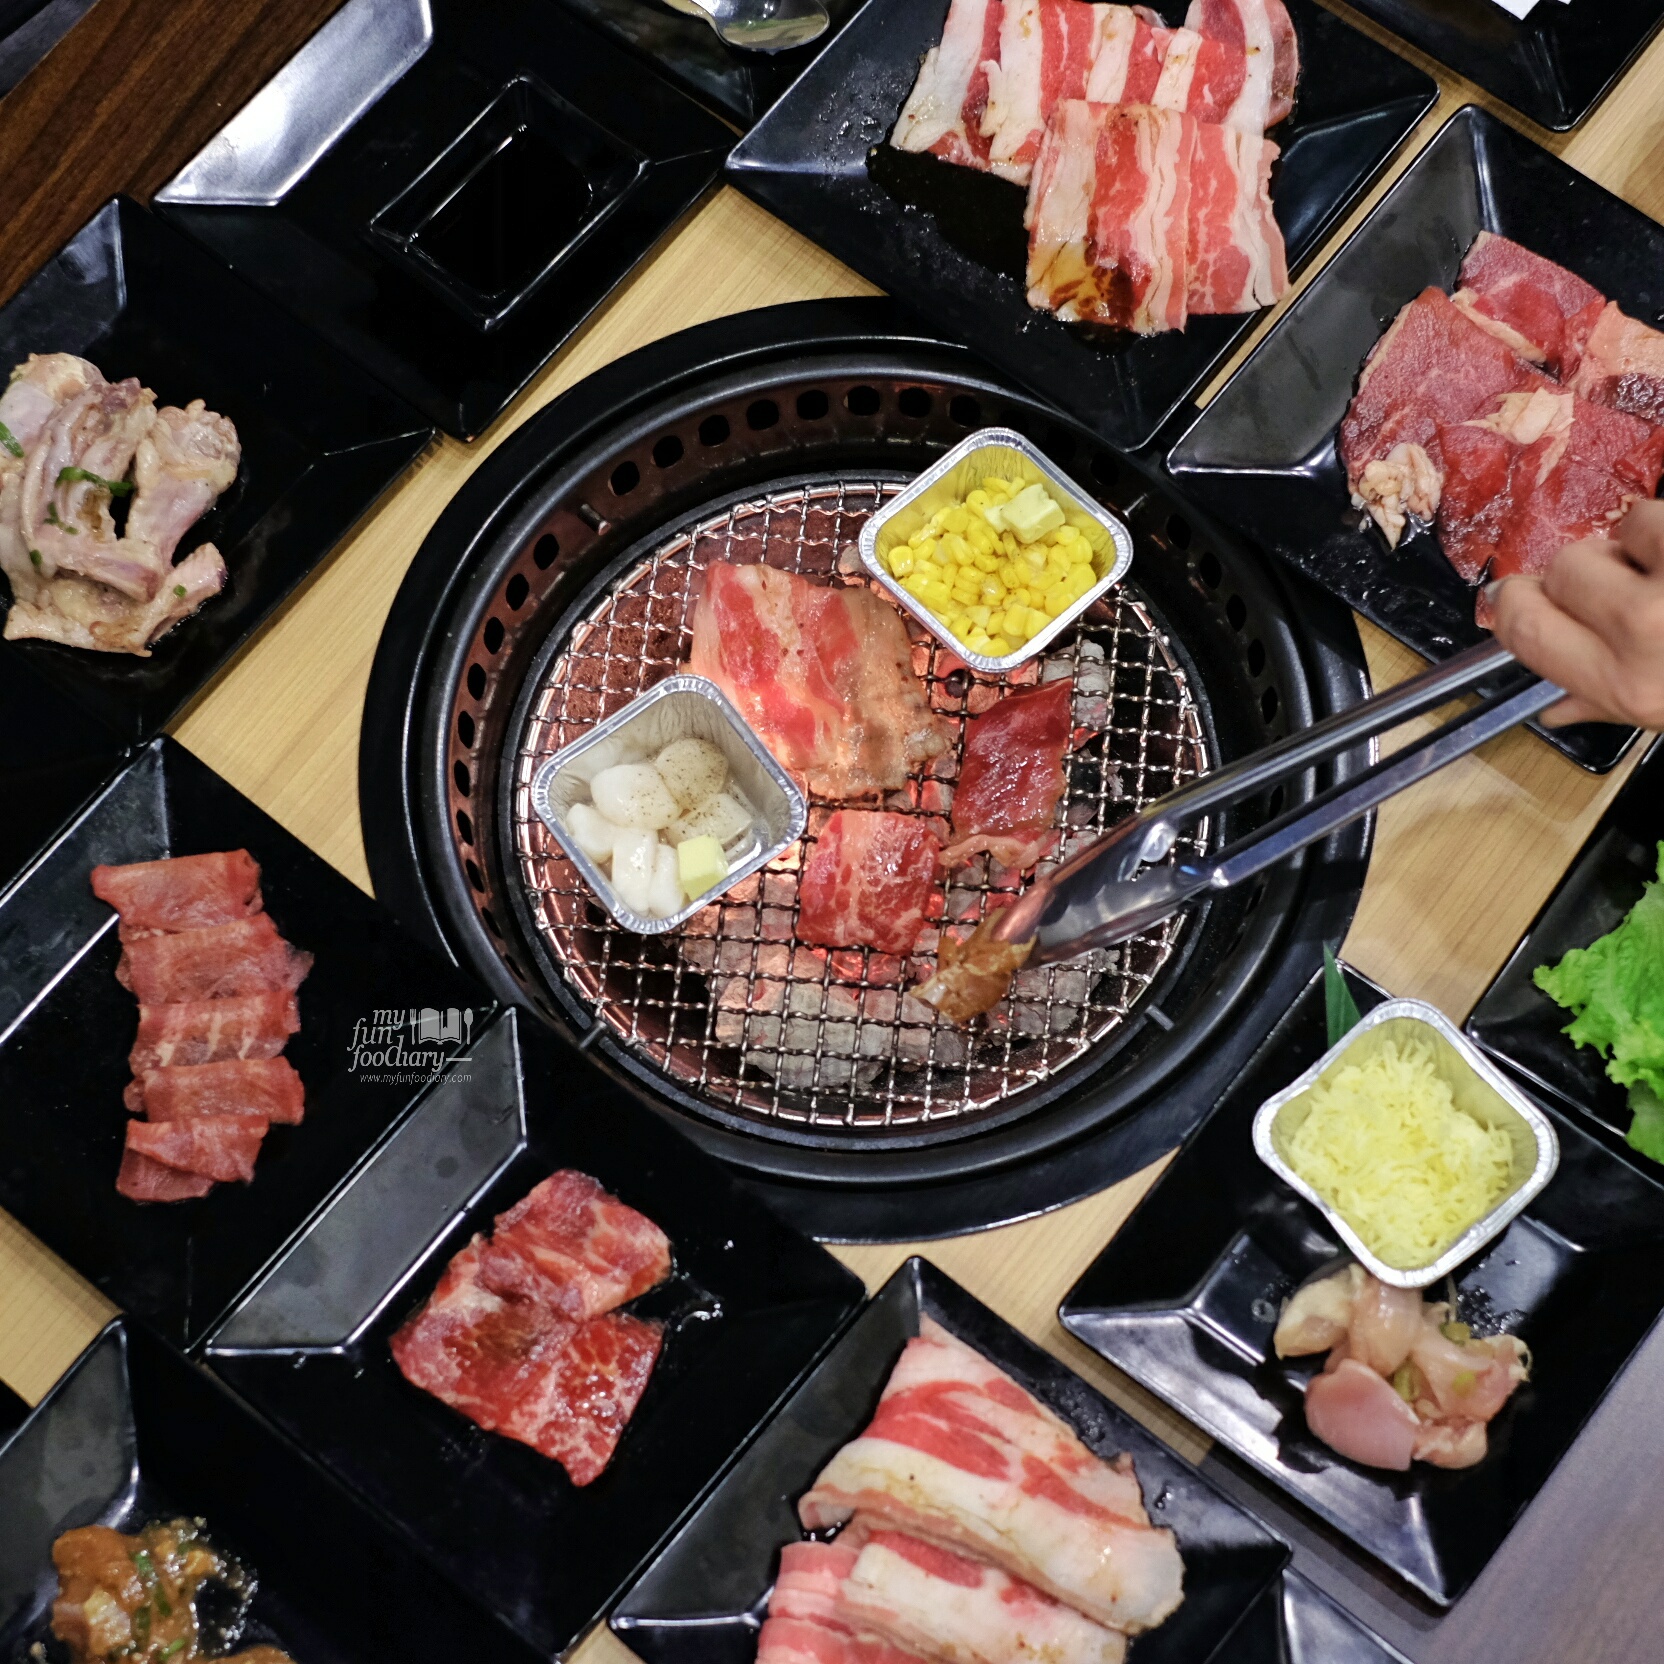 Japanese Grill BBQ All You Can Eat at Gyukaku Lippo Mall Puri by Myfunfoodiary